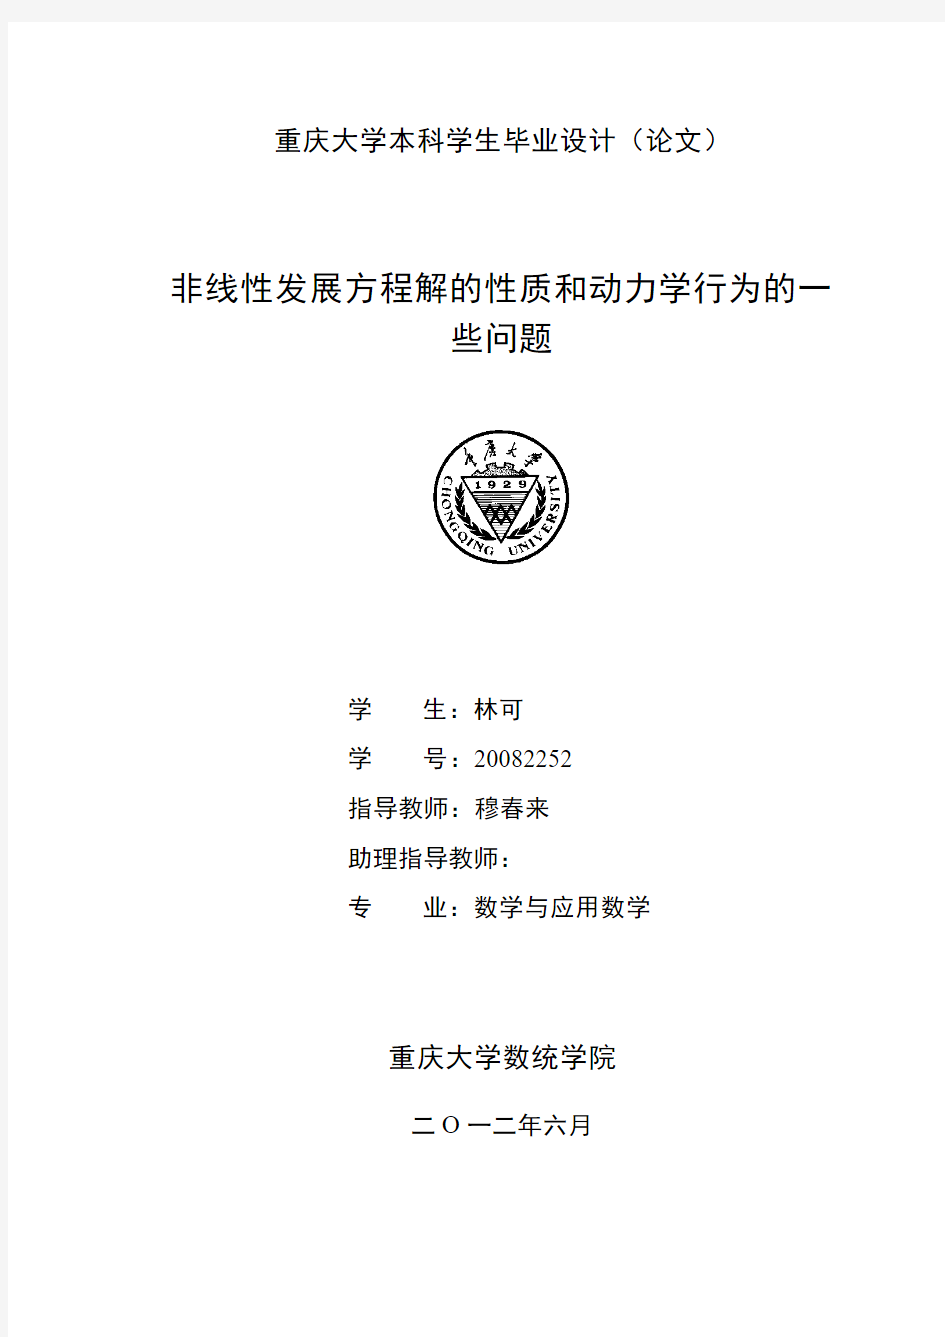 重庆大学本科毕业设计(论文)模版